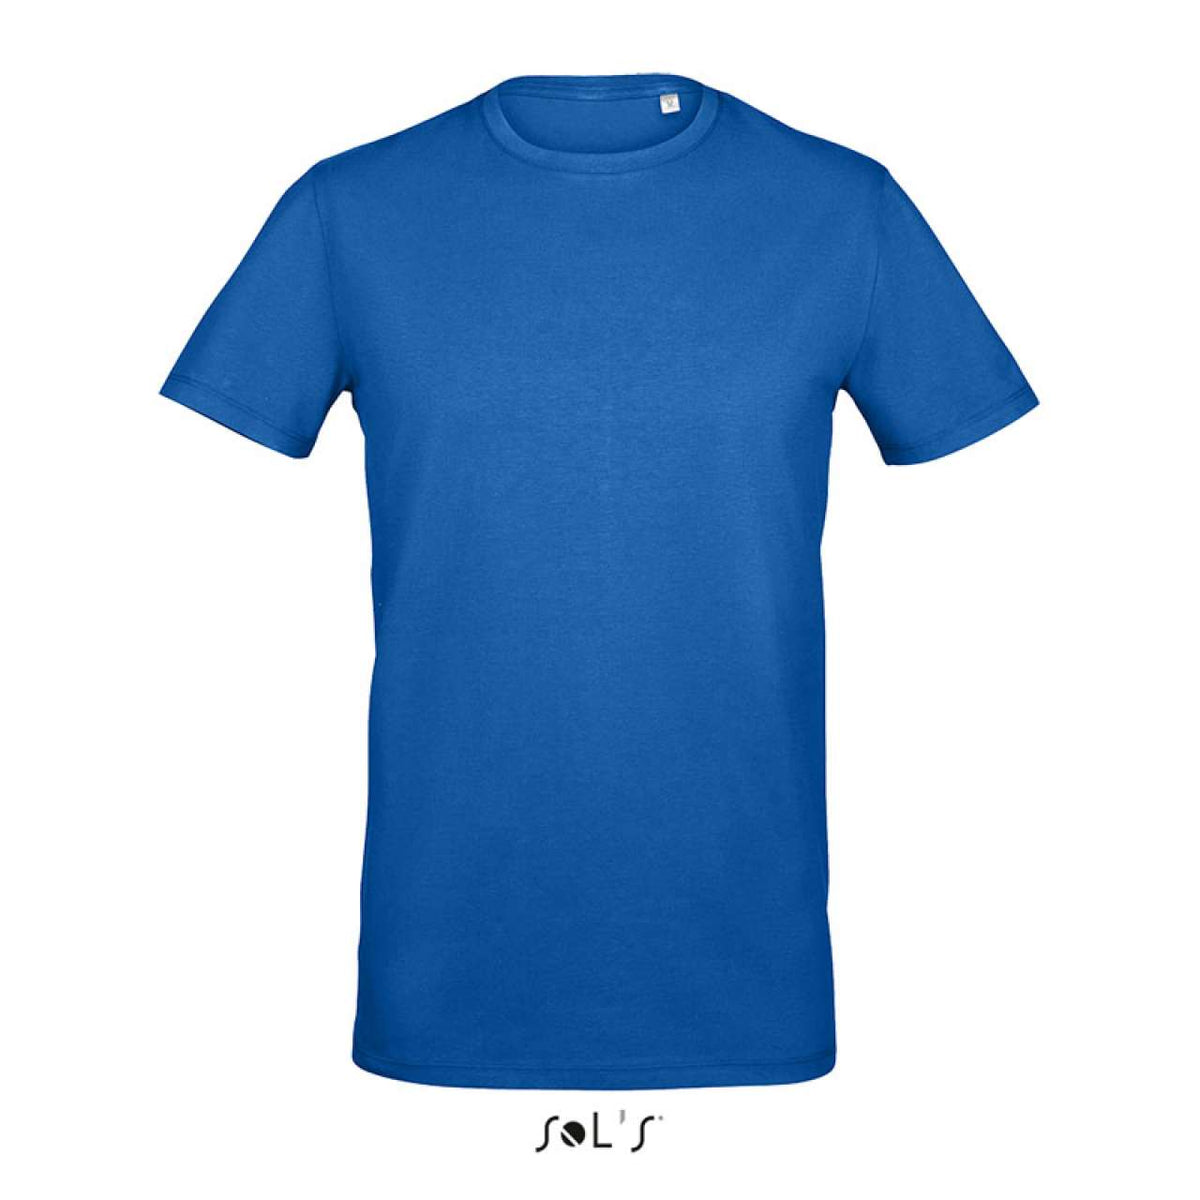 SOL'S Herren T-Shirt Round Neck Oberteil Shirt Basic Baumwolle Kurzarm